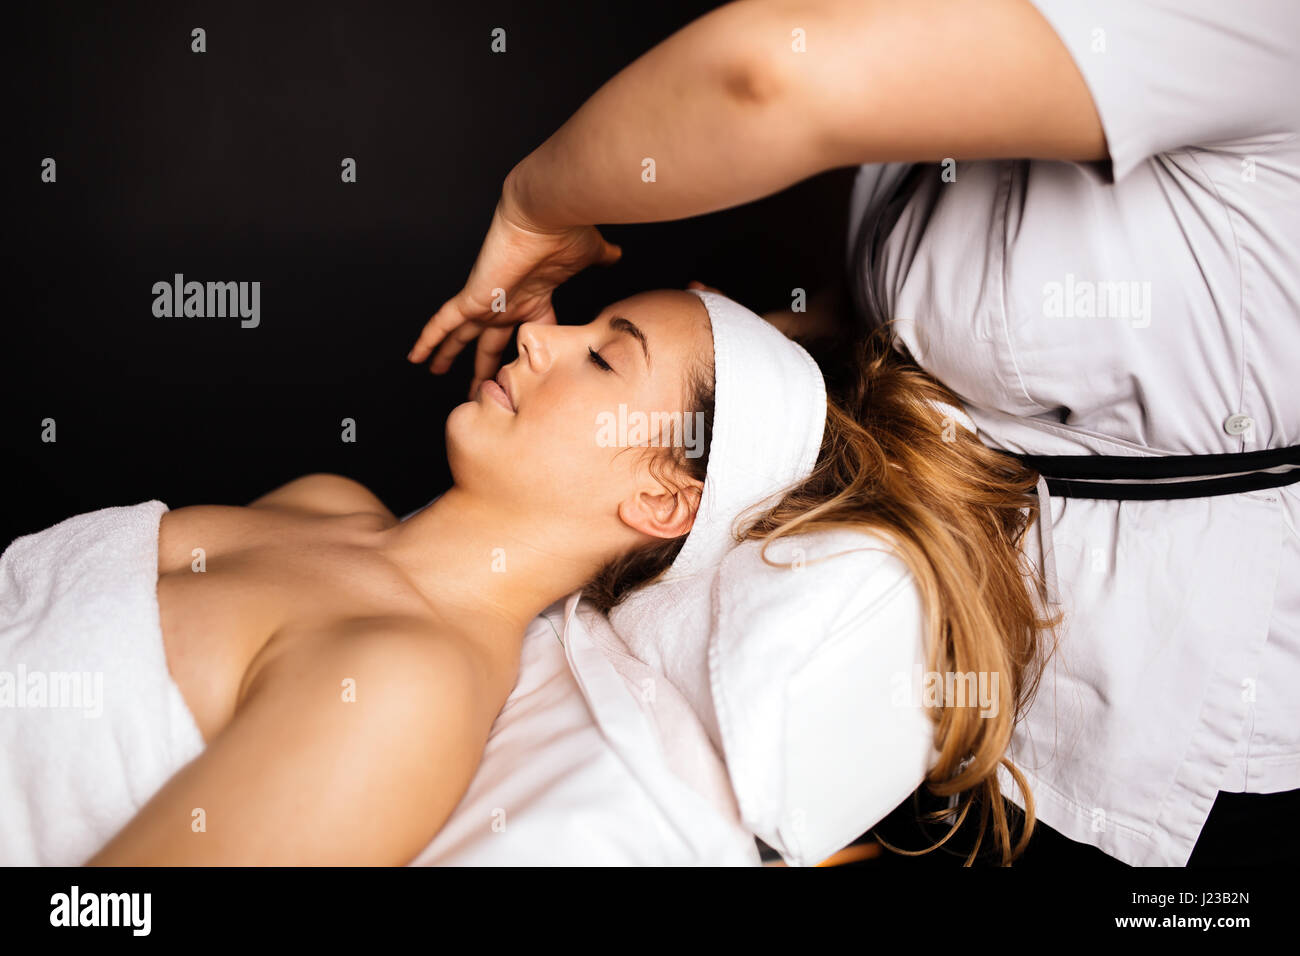 Beautiful woman enjoying massage treatment given by therapist Stock Photo